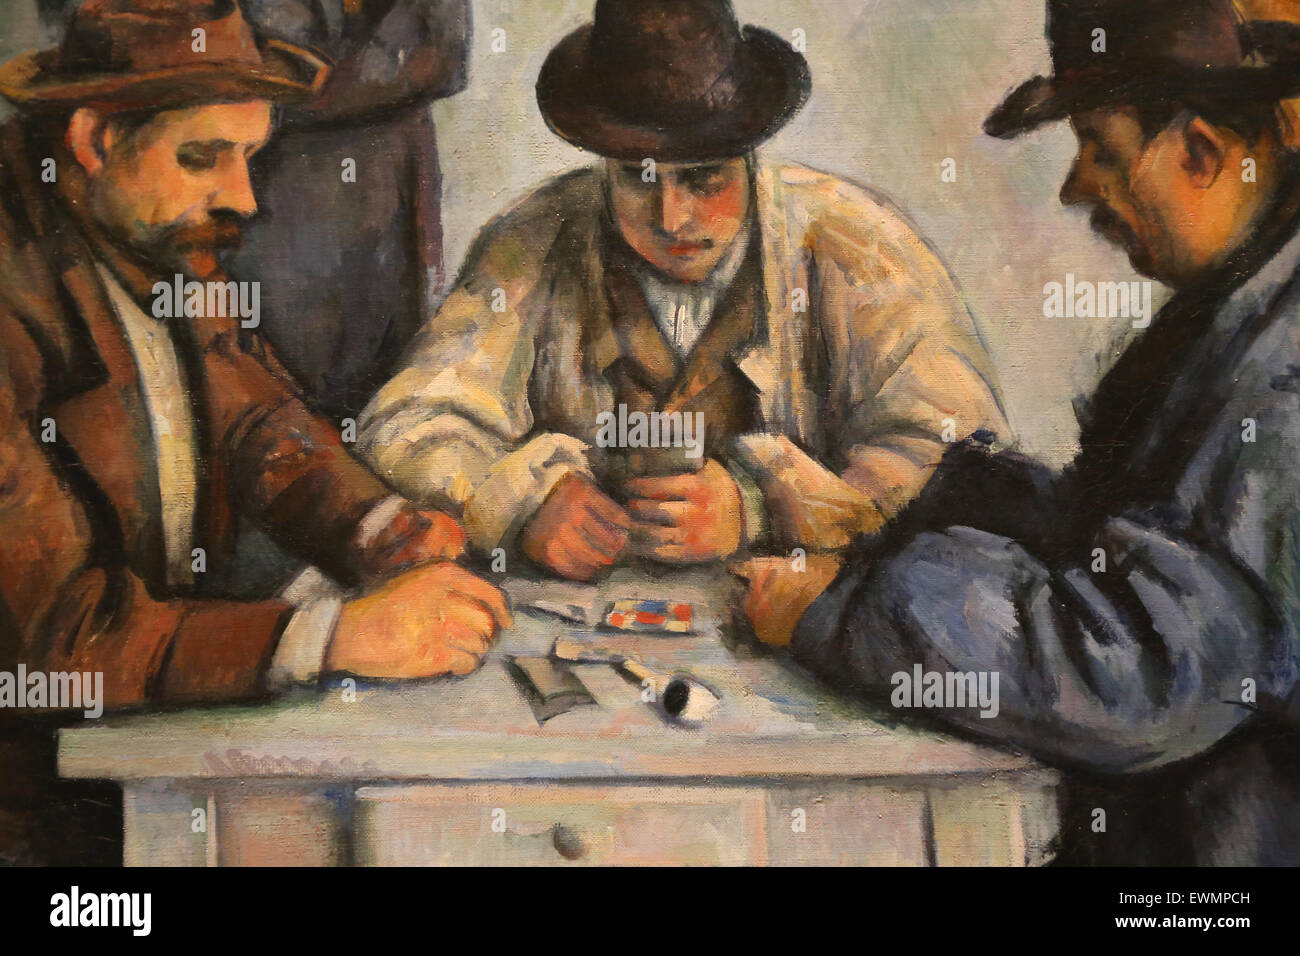 Paul Cézanne (1839-1906). Le peintre français. Les joueurs de cartes, 1880-92. Huile sur toile. Metropolitan Museum of Art de New York. USA. Détail Banque D'Images